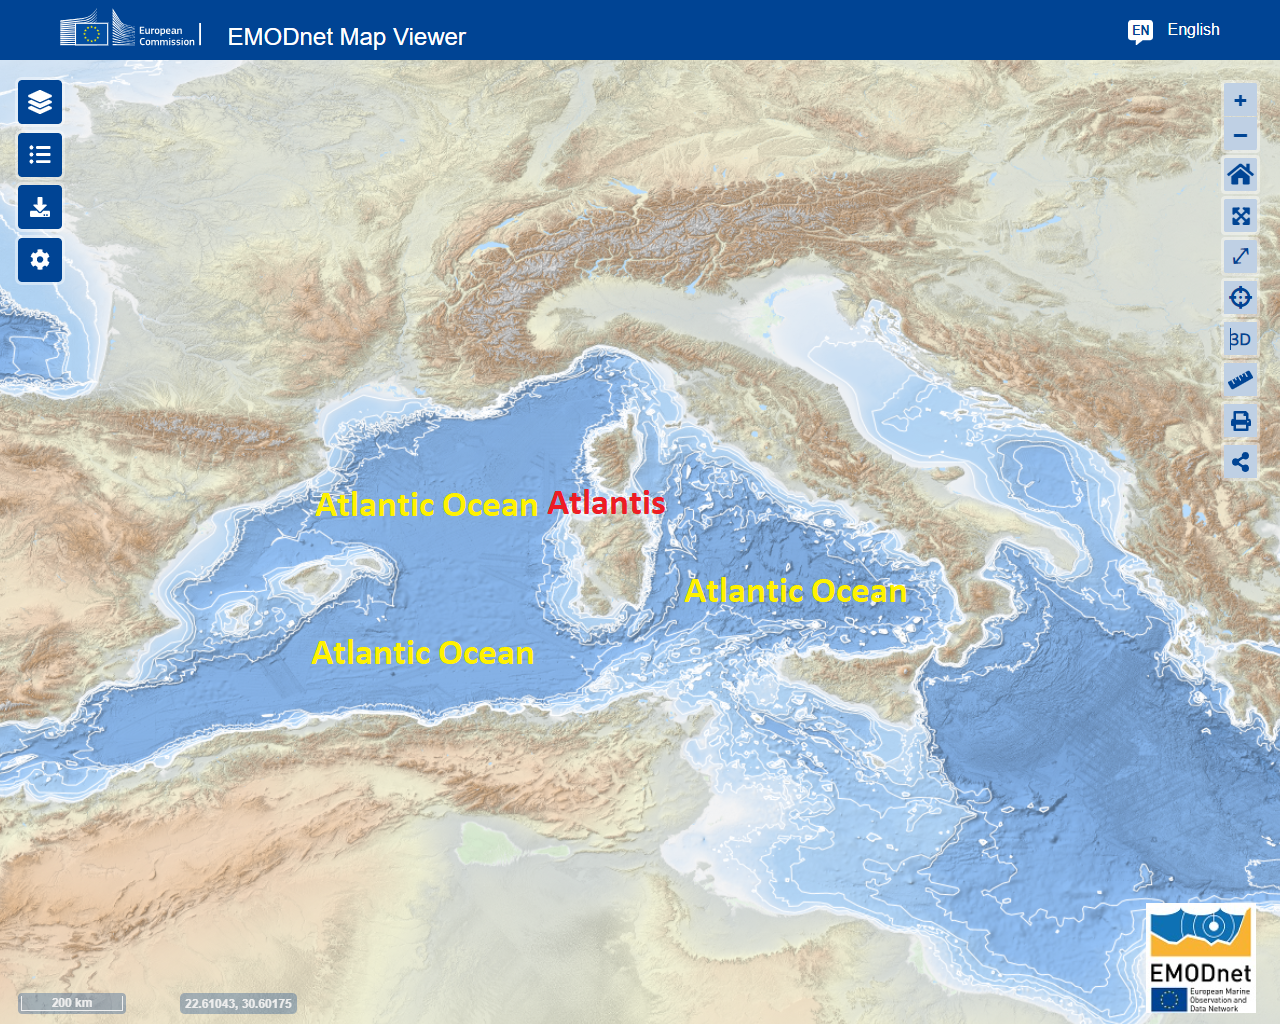 τρισδιάστατη βαθυμετρία του Παλαιολιθικού Ατλαντικού Ωκεανού που τώρα είναι γνωστή ως Μεσόγειος Θάλασσα